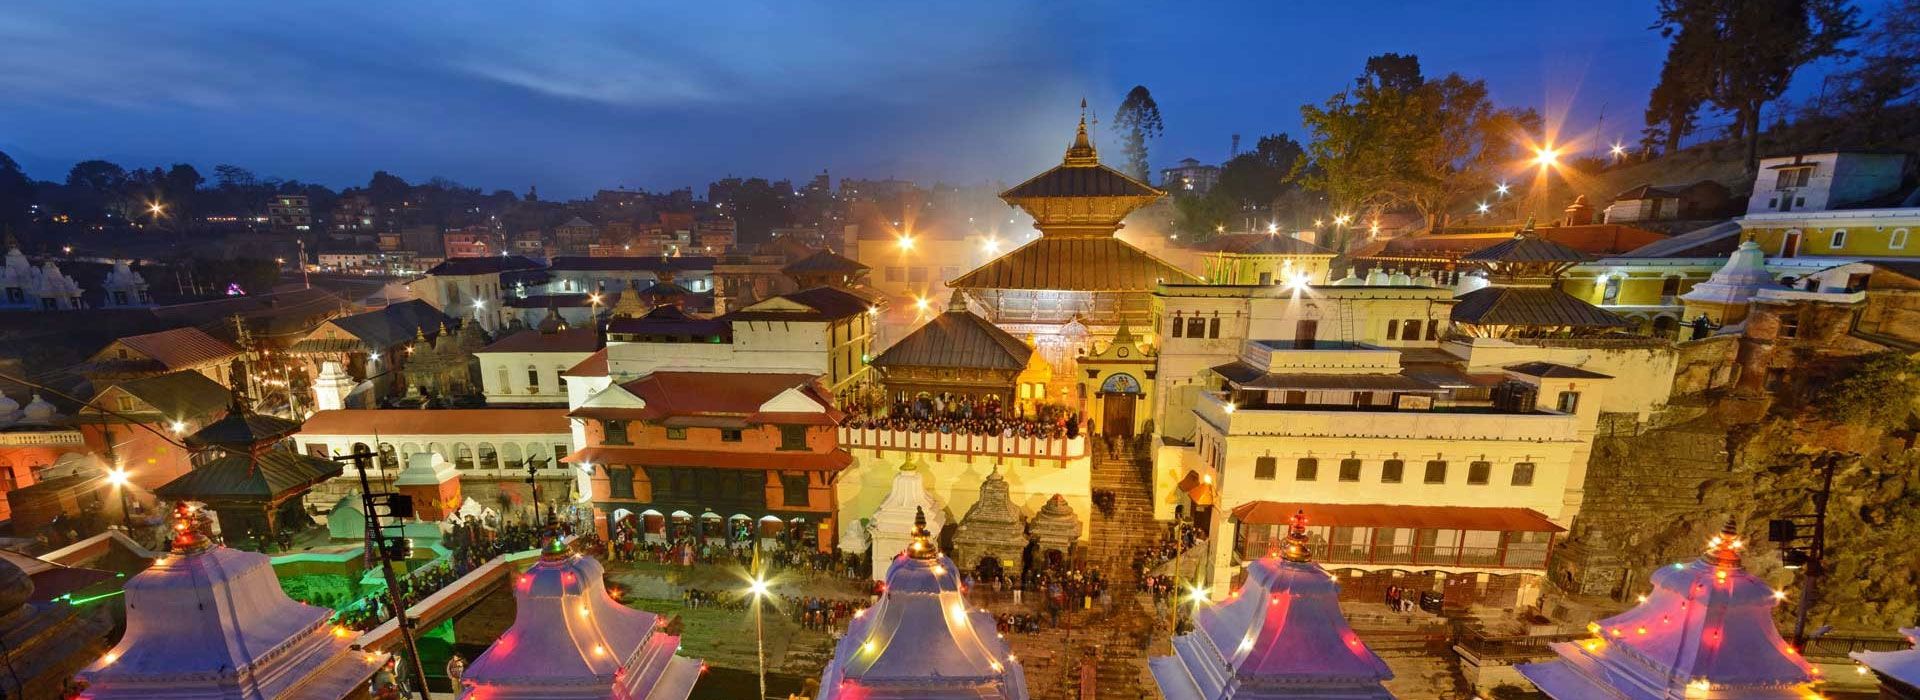 Pashupatinath Temple at Kathmandu